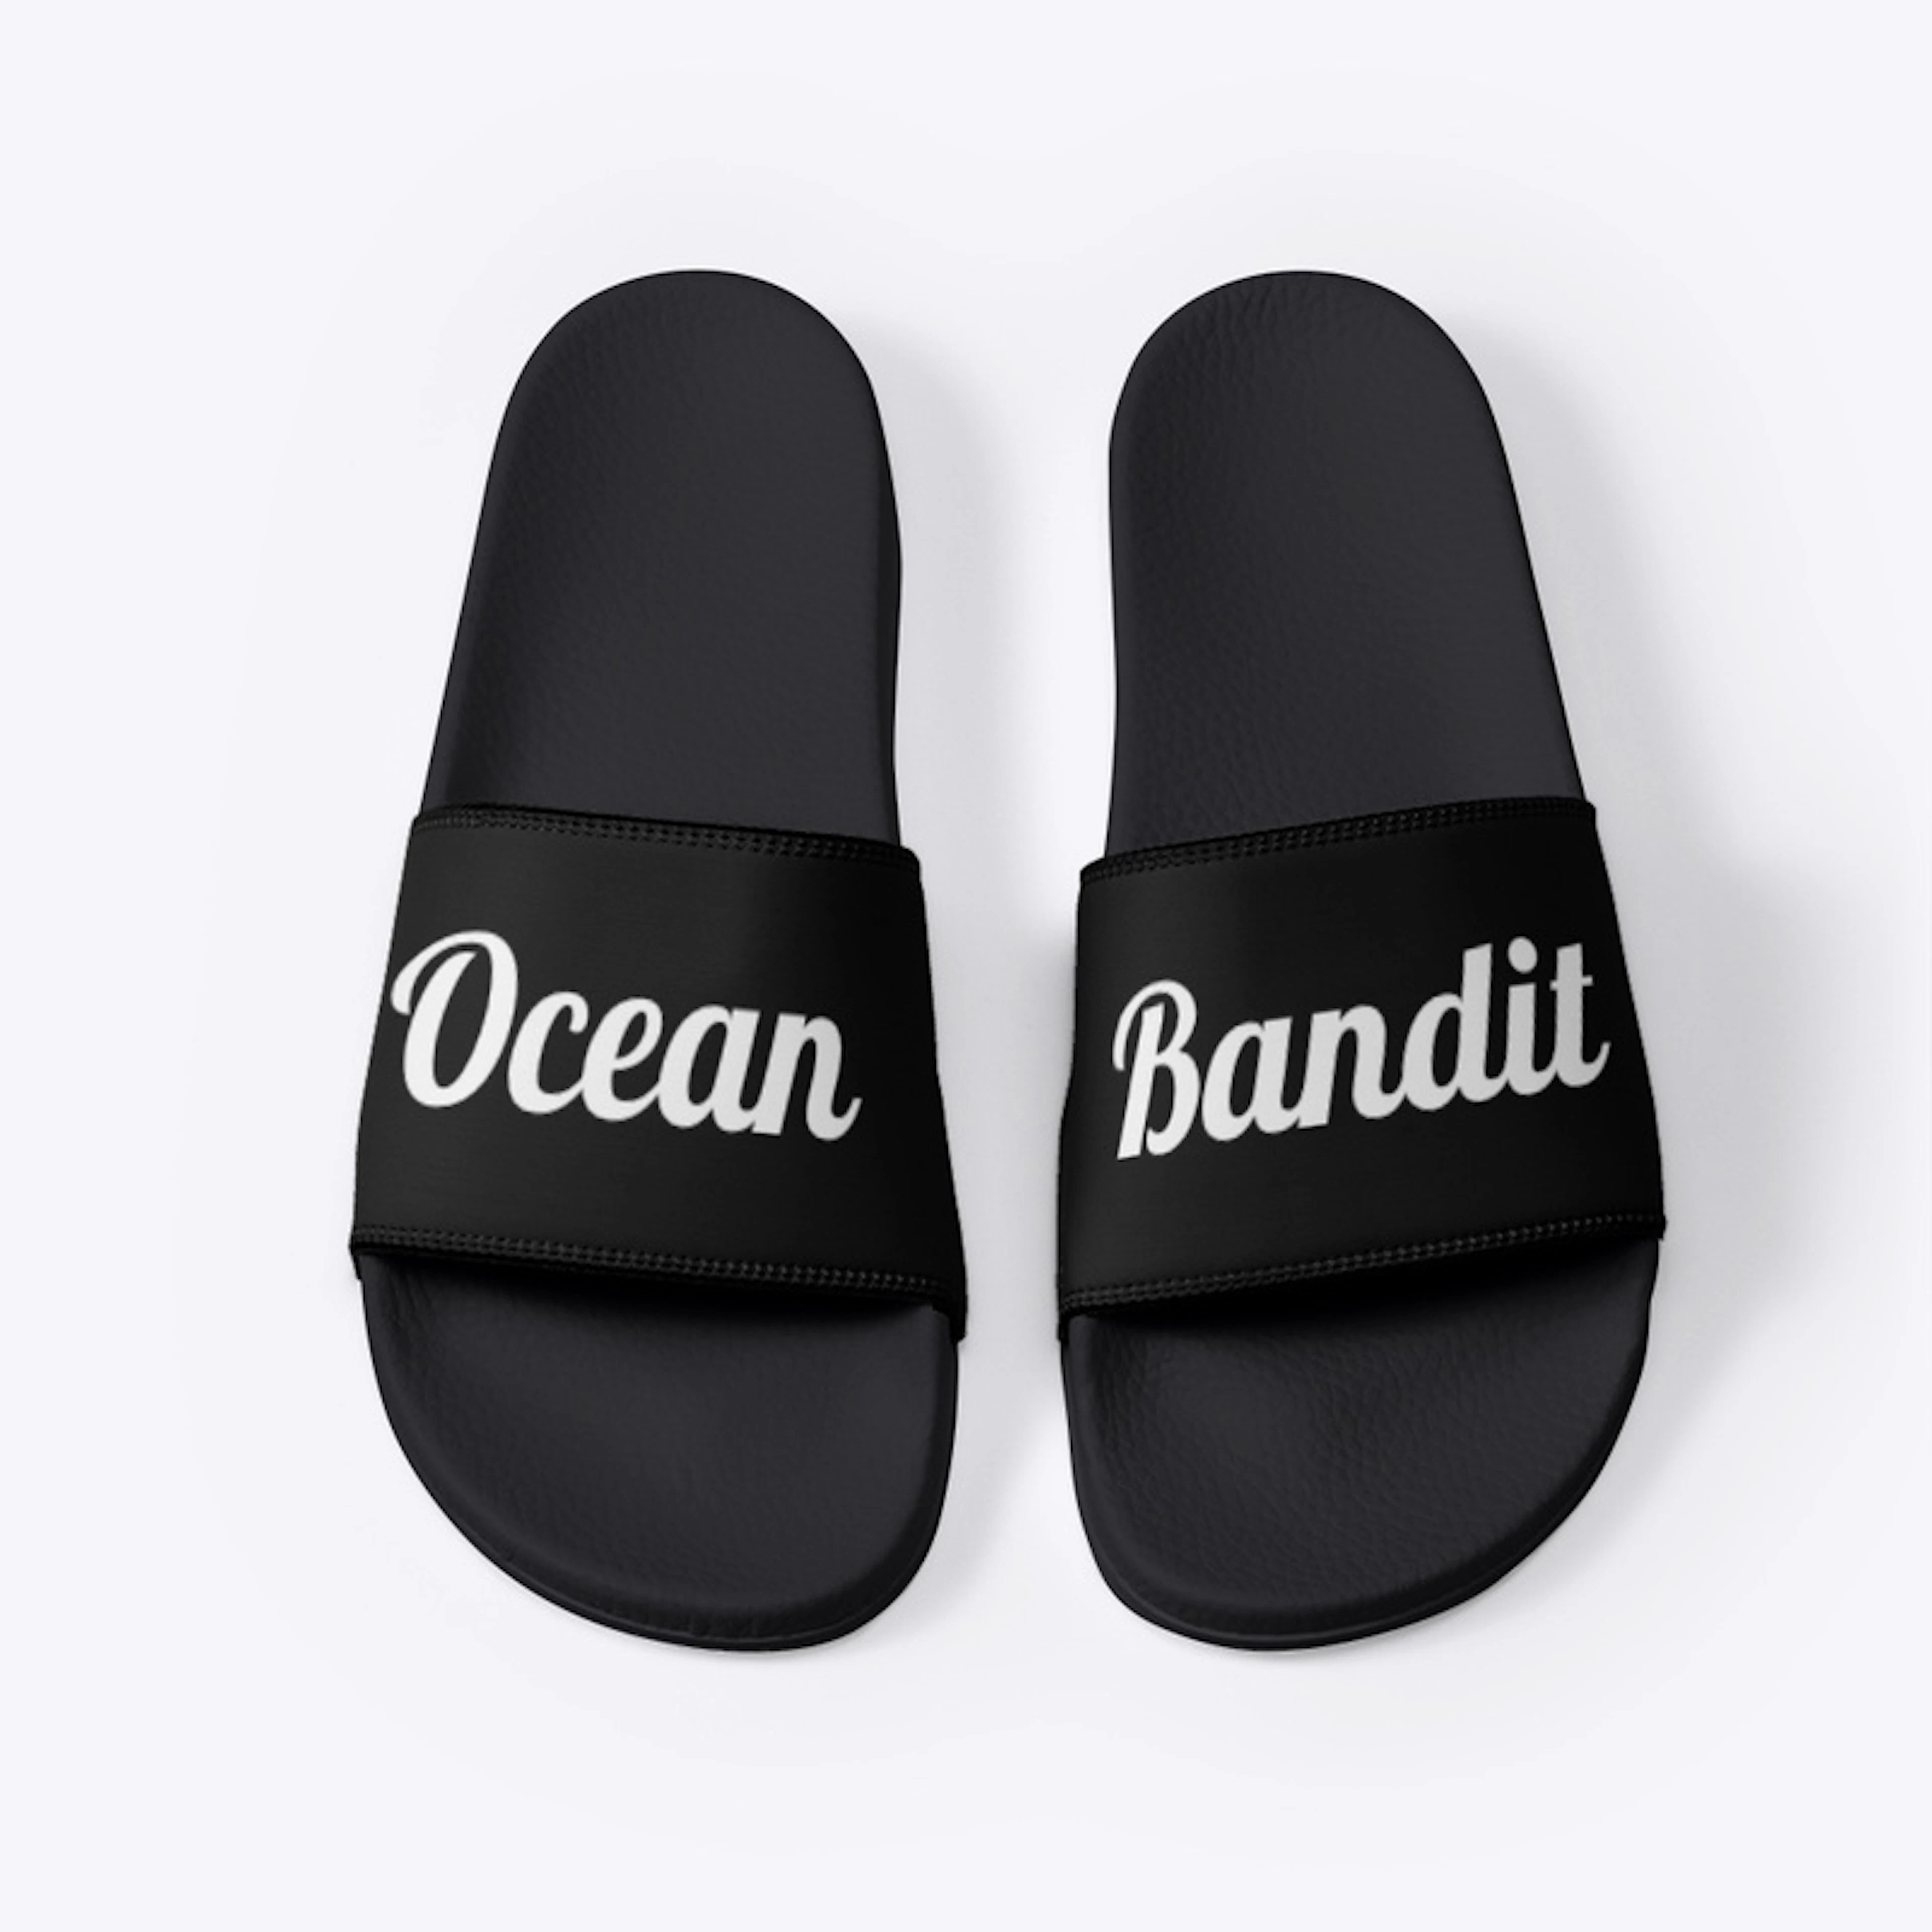 Bandit Slides